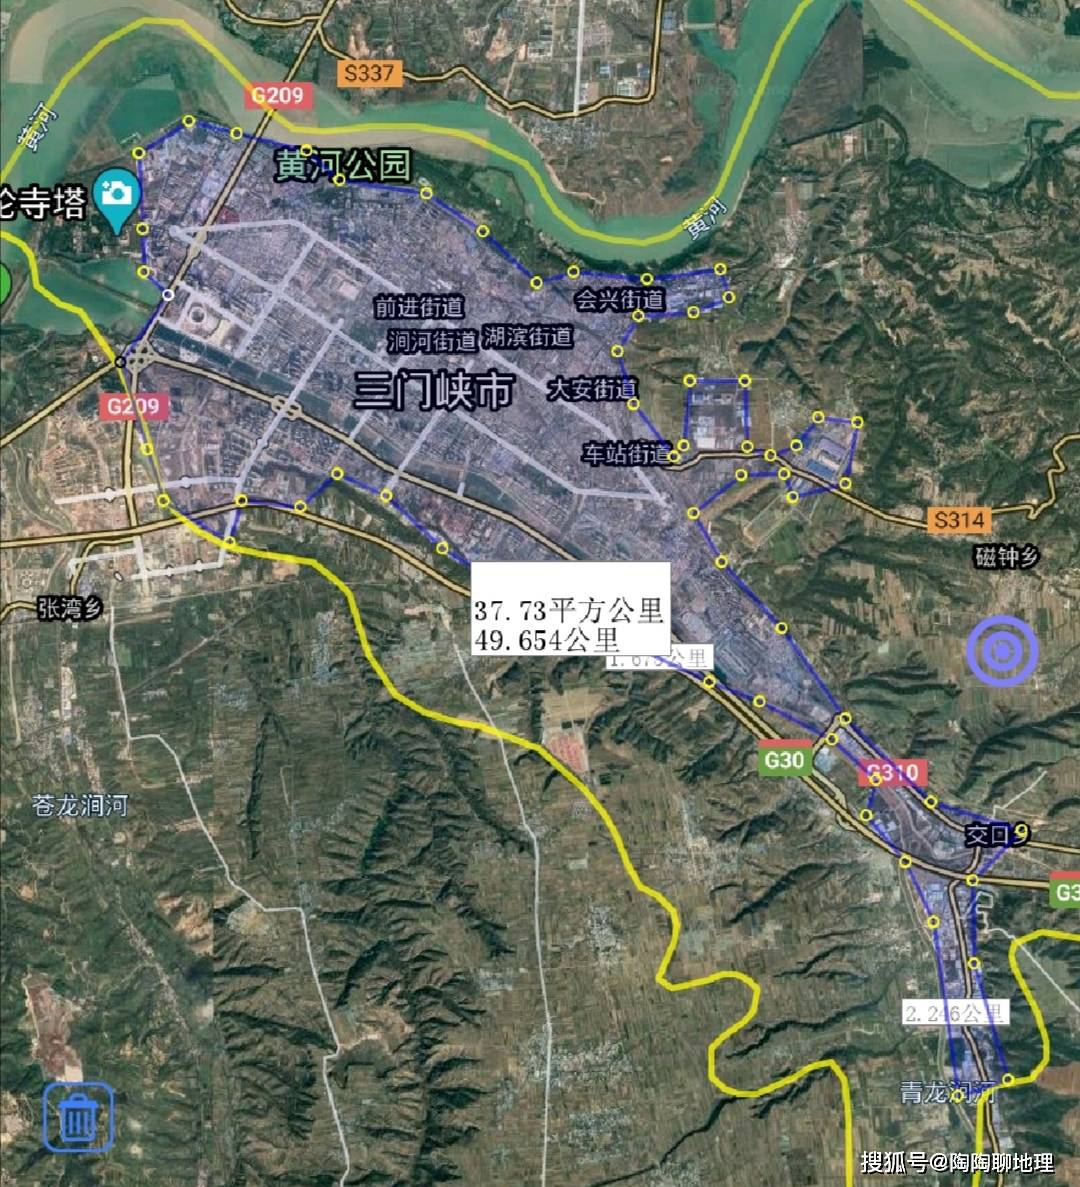 三门峡市建成区排名,湖滨区最大,卢氏县最小,来了解一